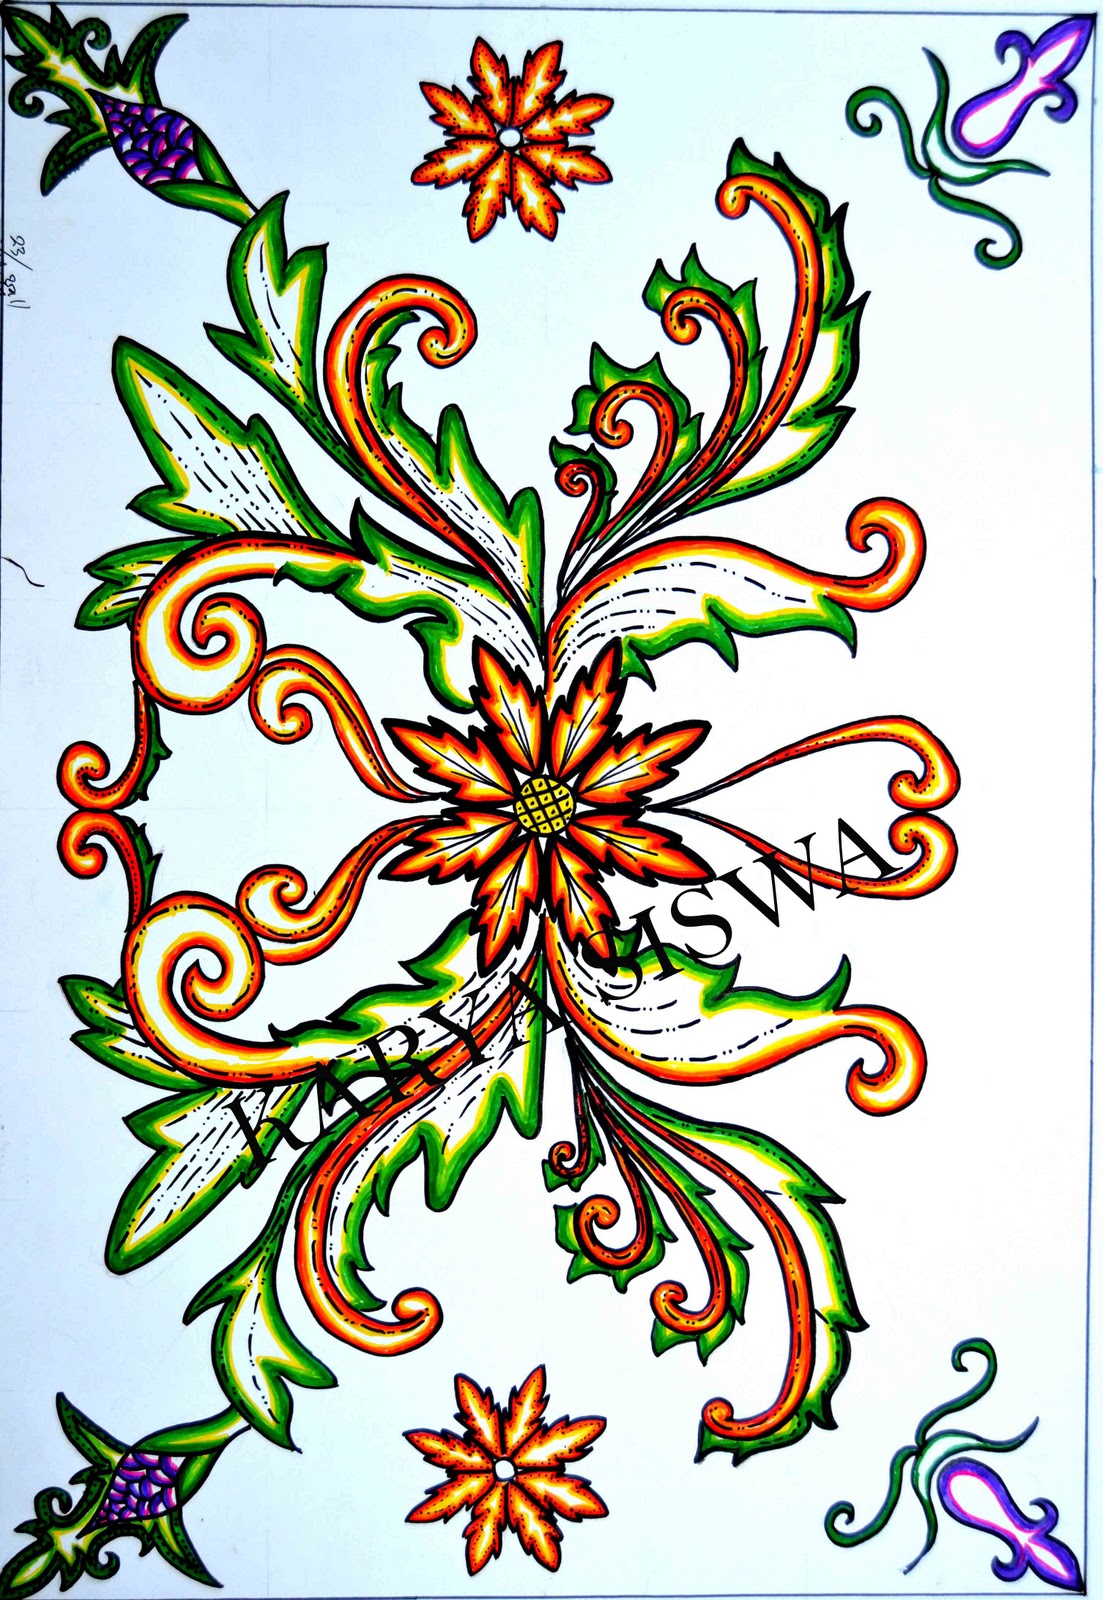 Contoh sketsa gambar batik bunga - 28 images - mewarnai 